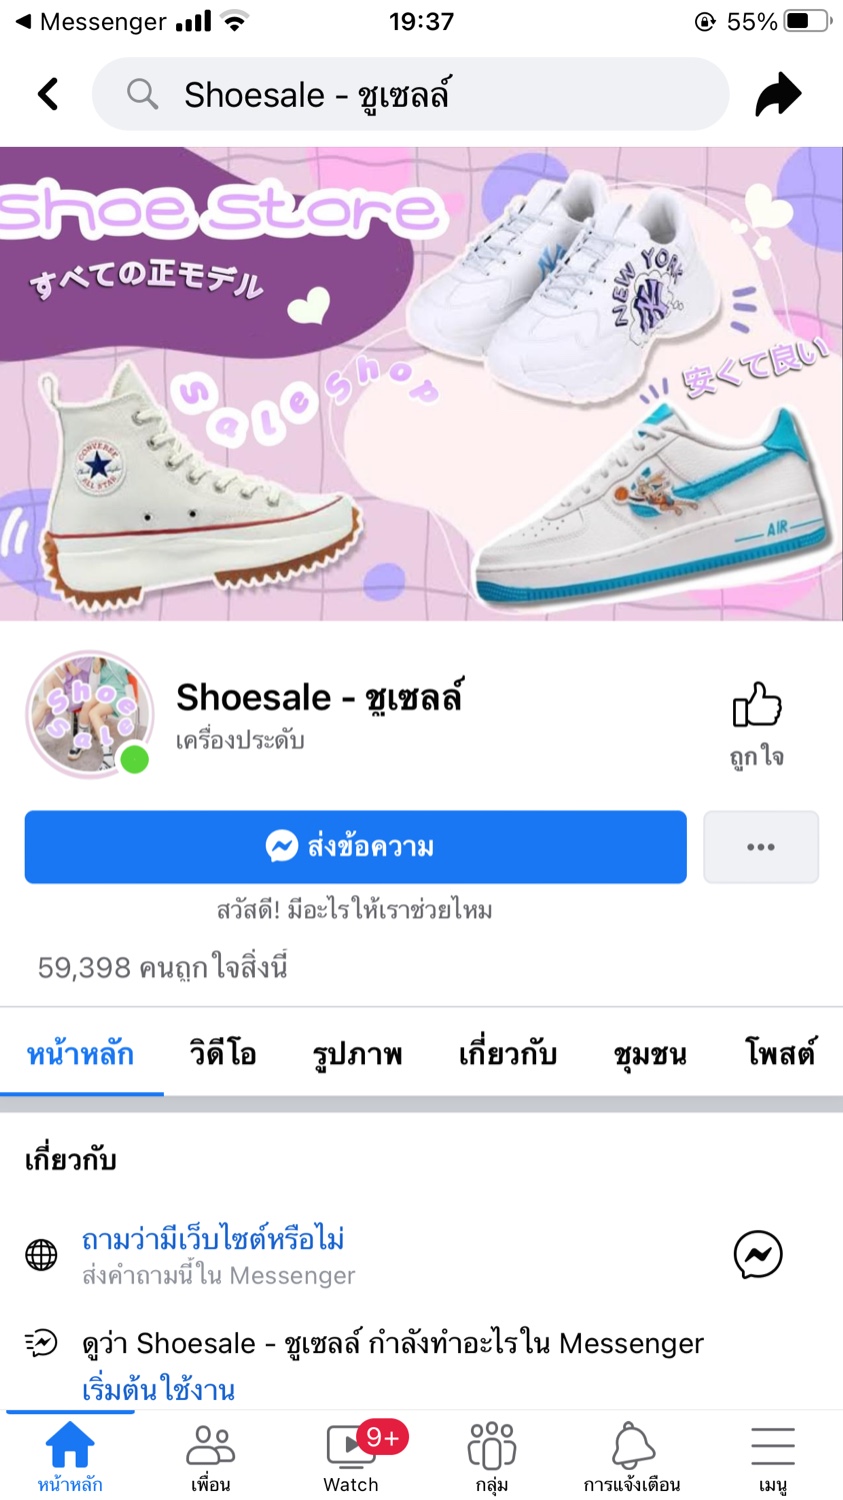 มีร้านขายรองเท้าNikeแท้ในFacebookไหมคะ - Pantip